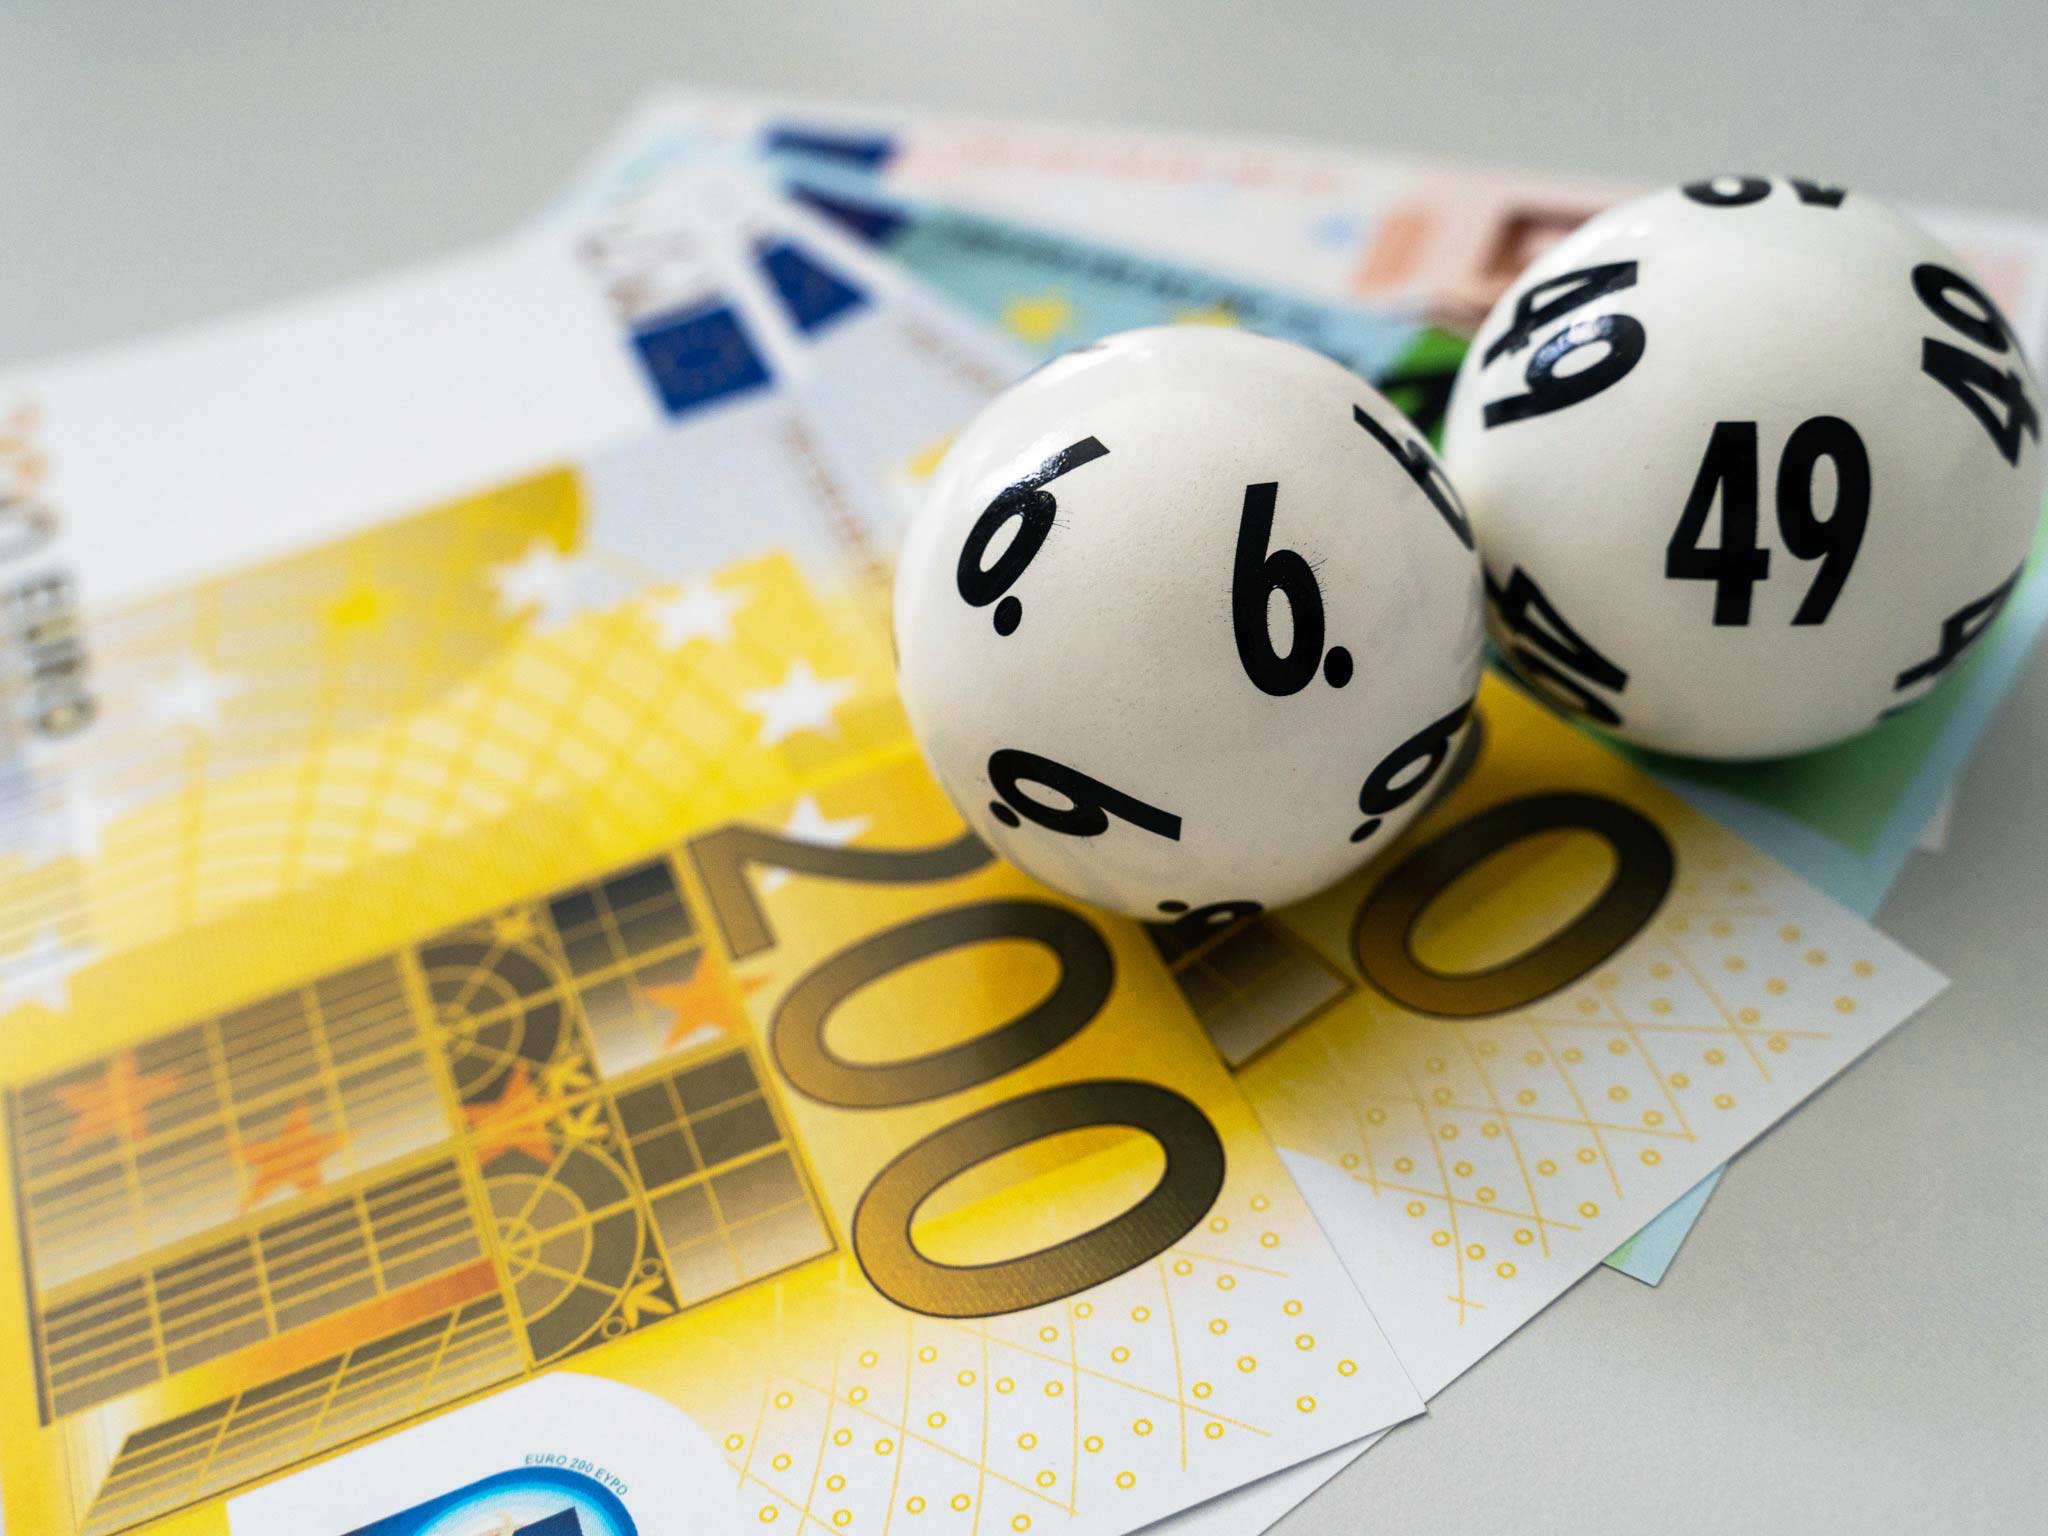 Lottokugeln auf Euroscheinen